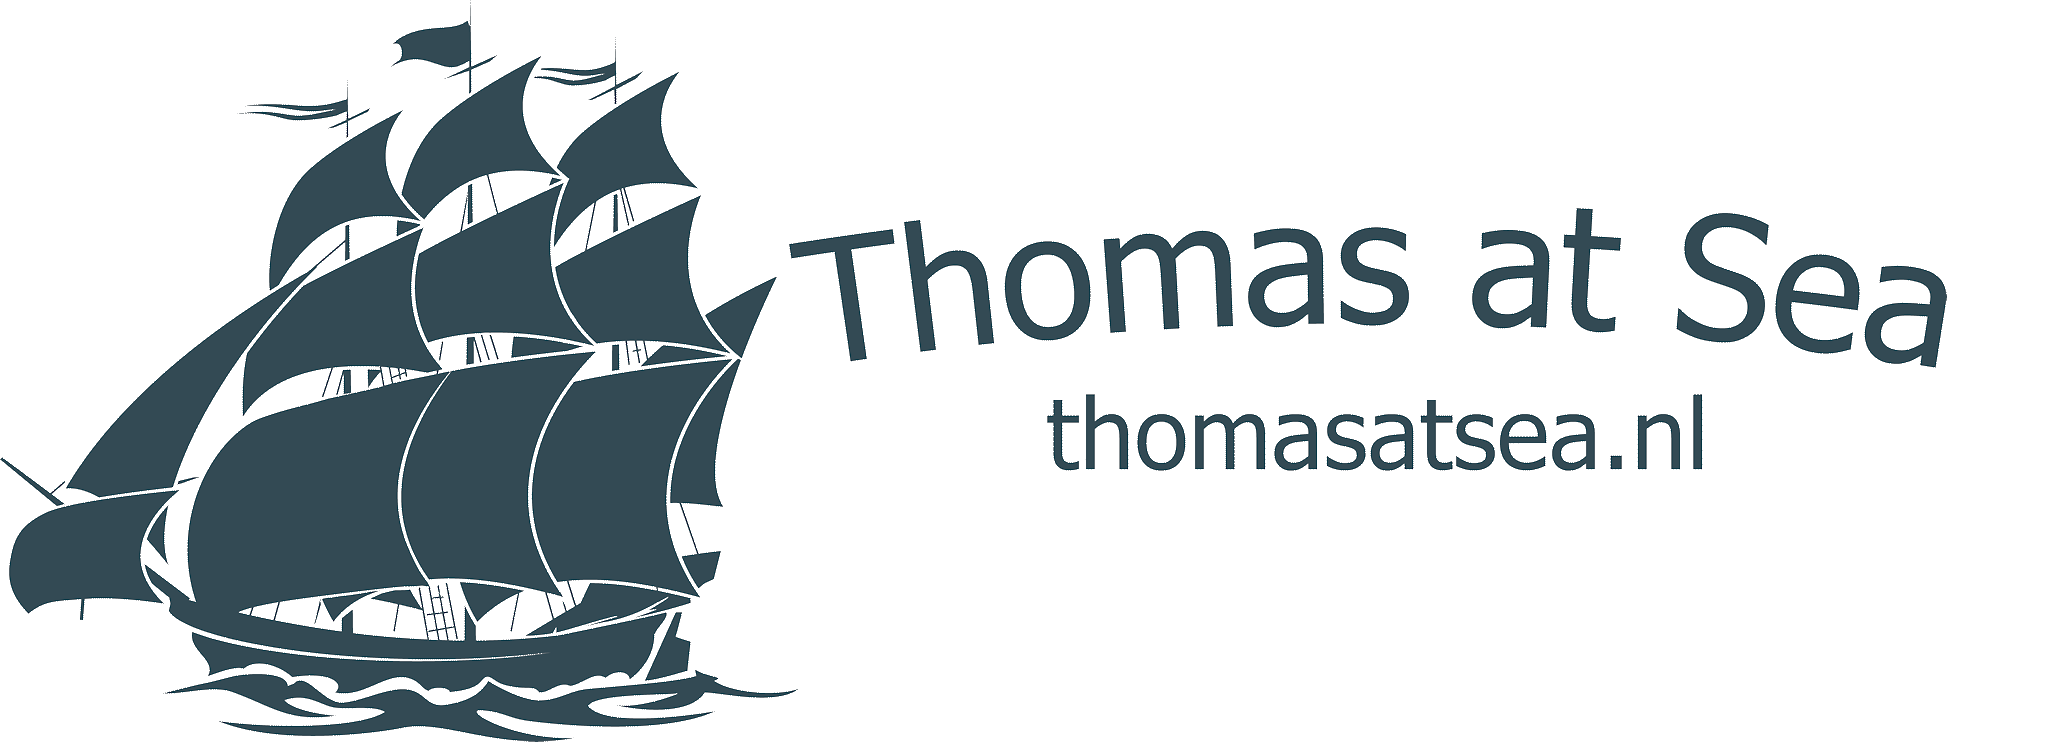 Thomas at Sea logo